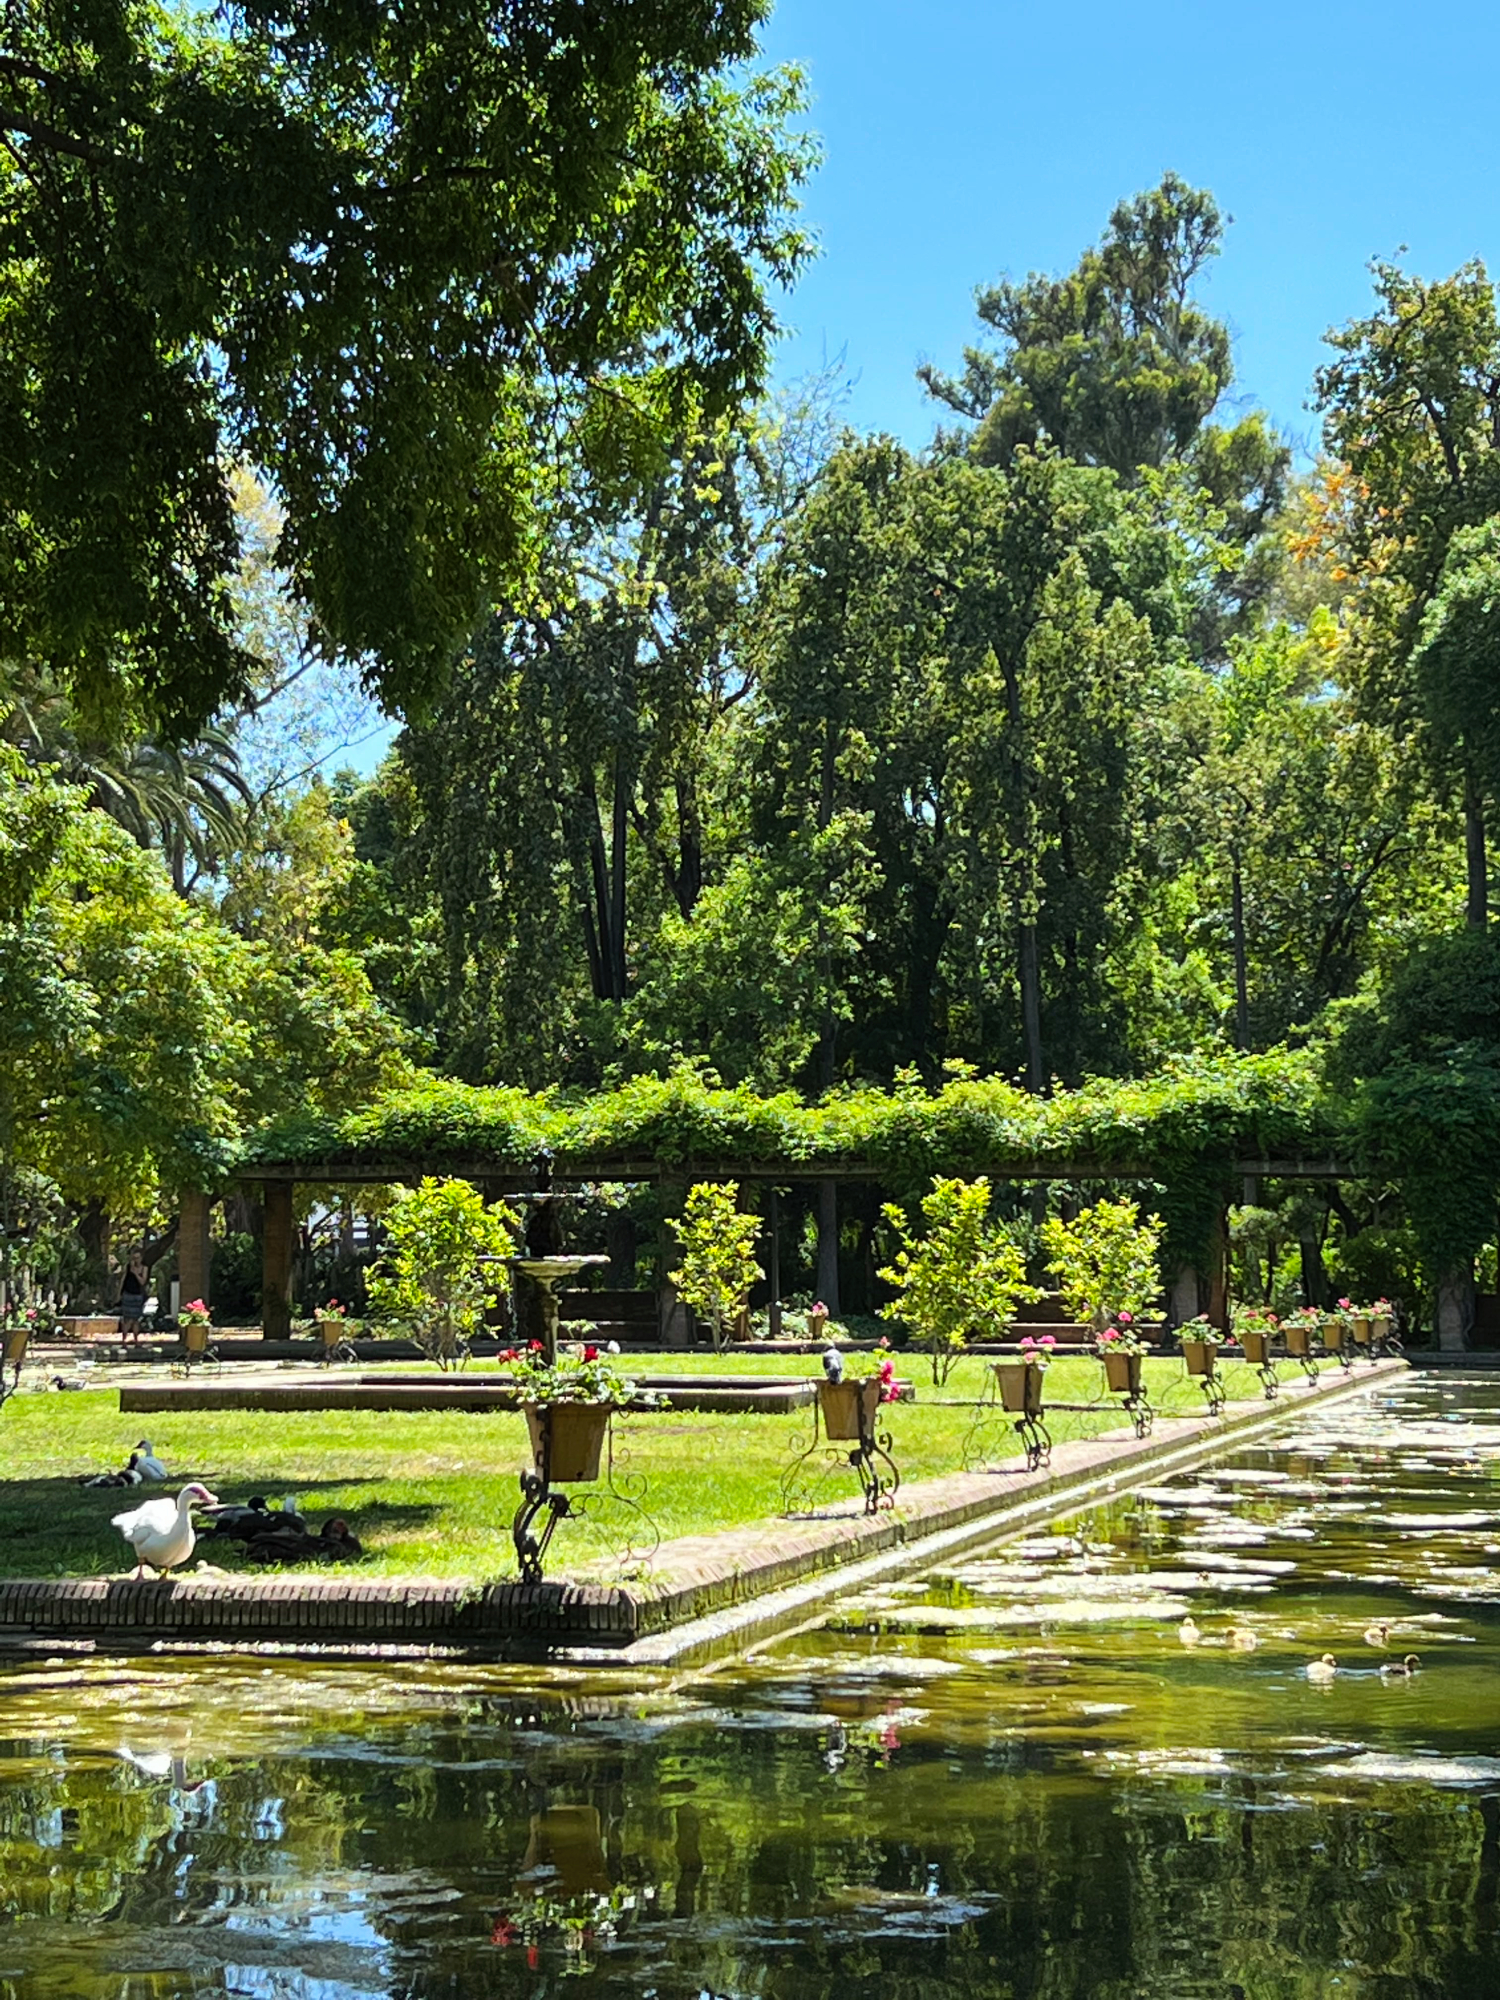 Lotus Pond, Parque de María Luisa, Seville, Spain